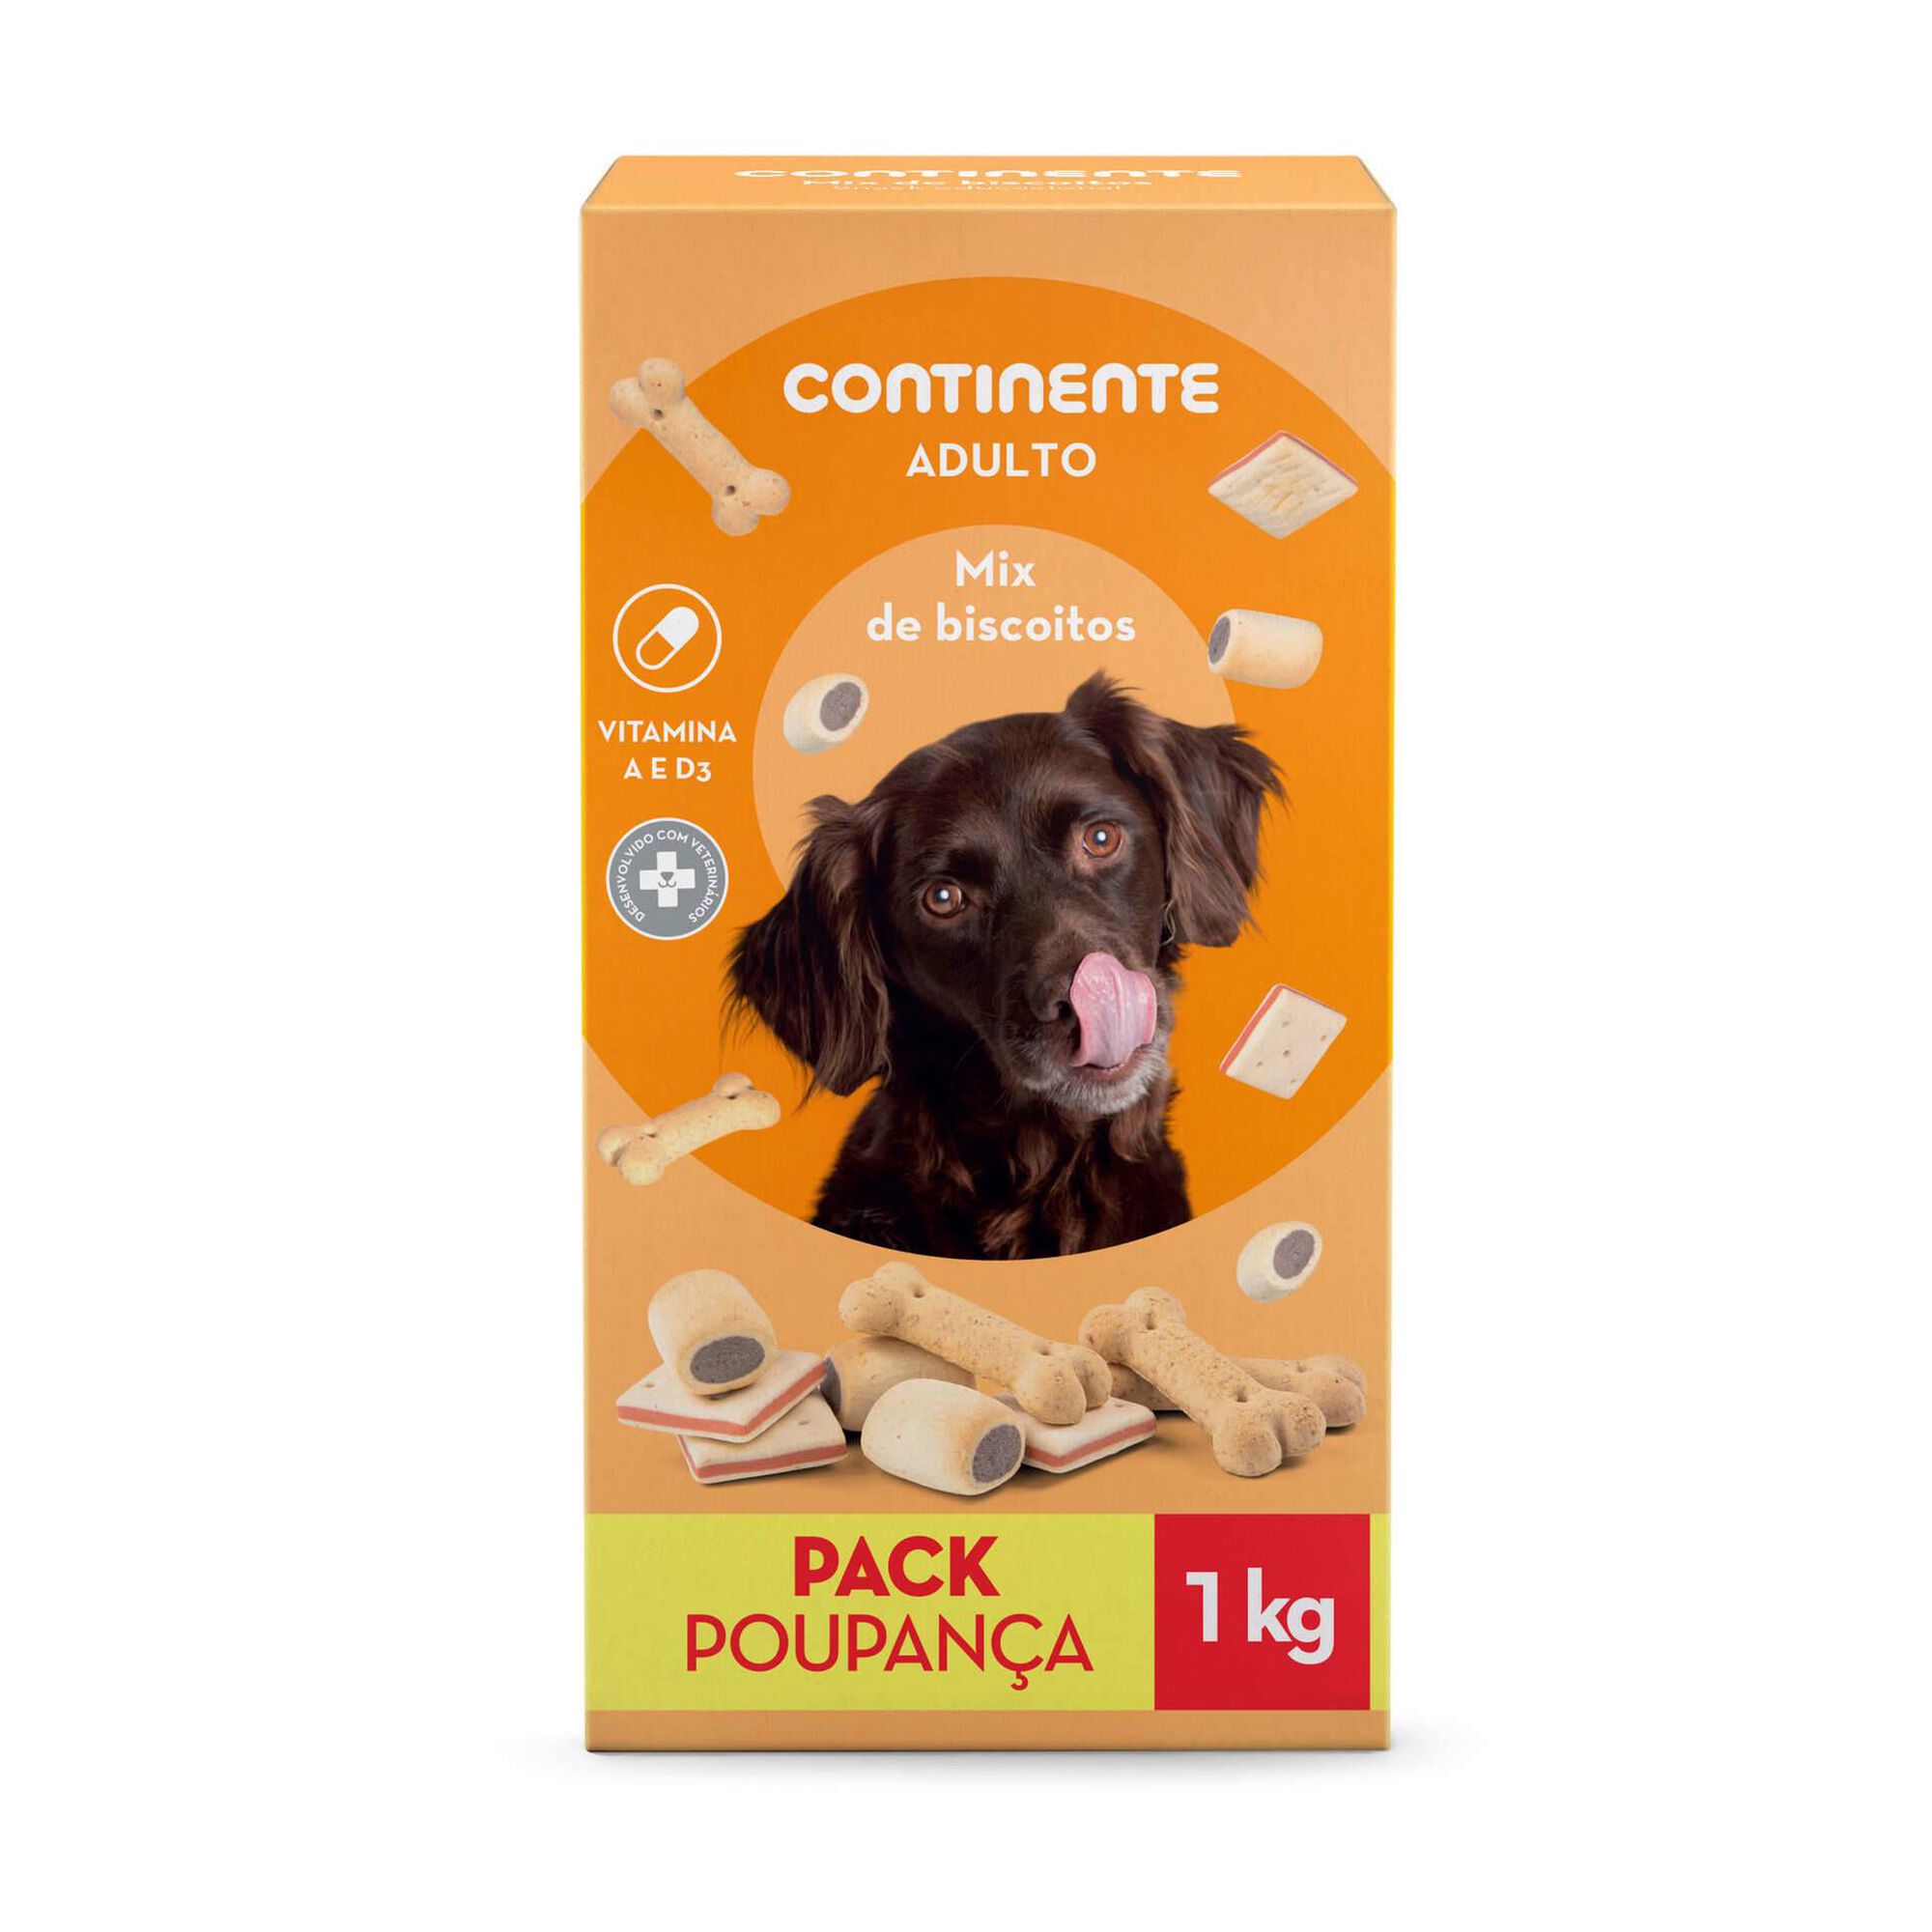 Snack para Cão Adulto Mix Biscoitos Pack Poupança